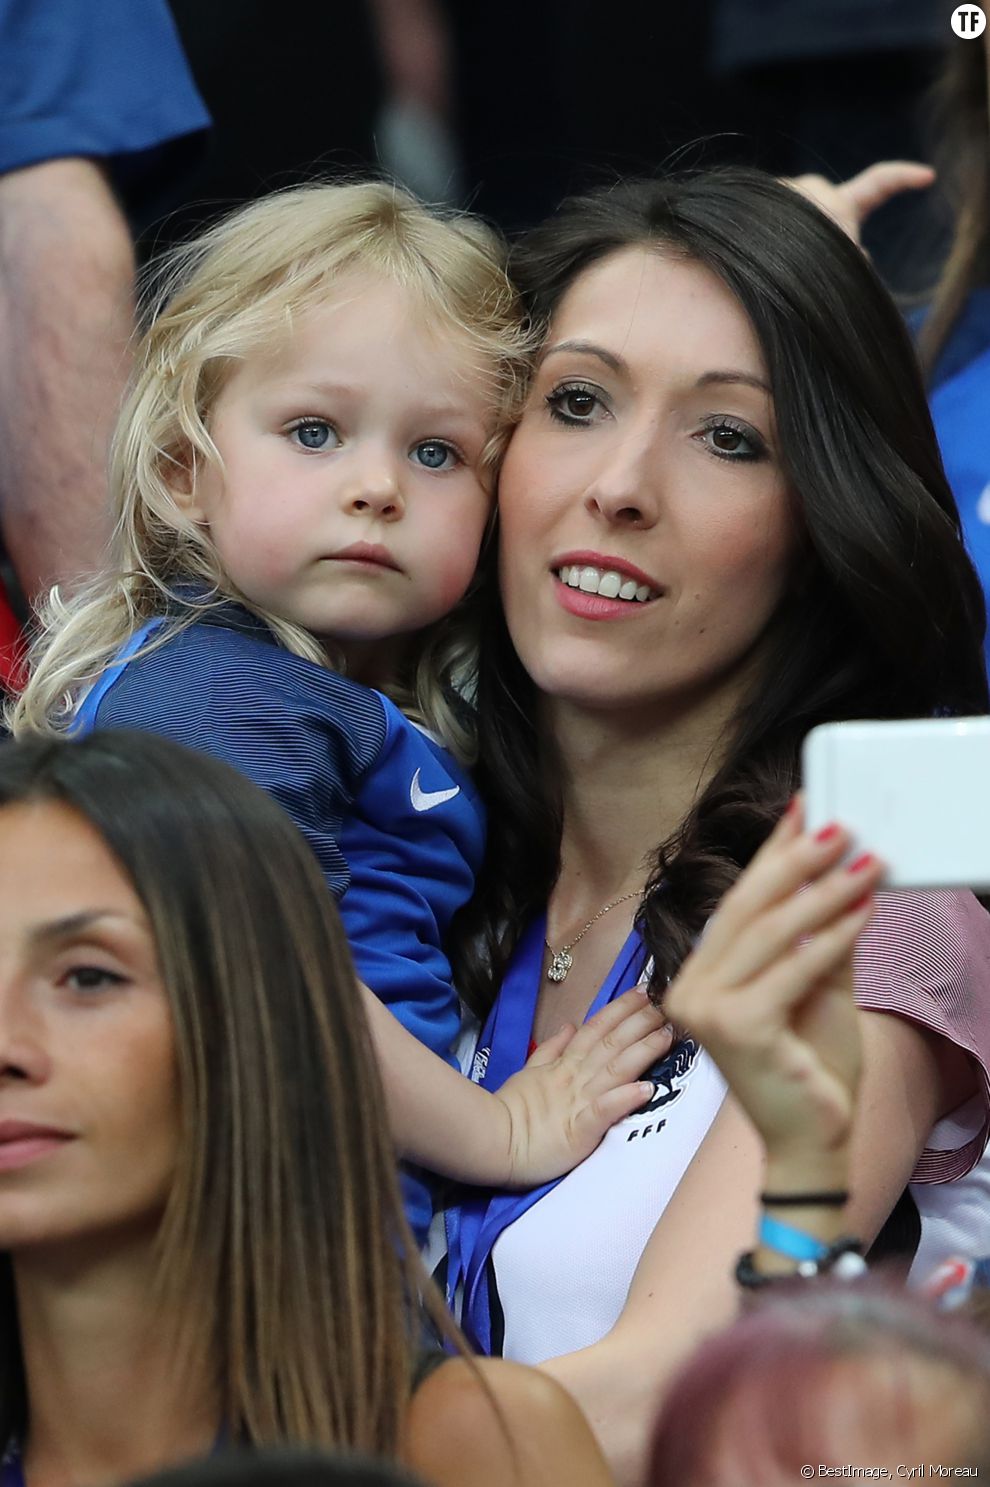  Jennifer Giroud et sa fille Jade au match d&#039;ouverture de l&#039;Euro 2016, France-Roumanie au Stade de France, le 10 juin 2016 